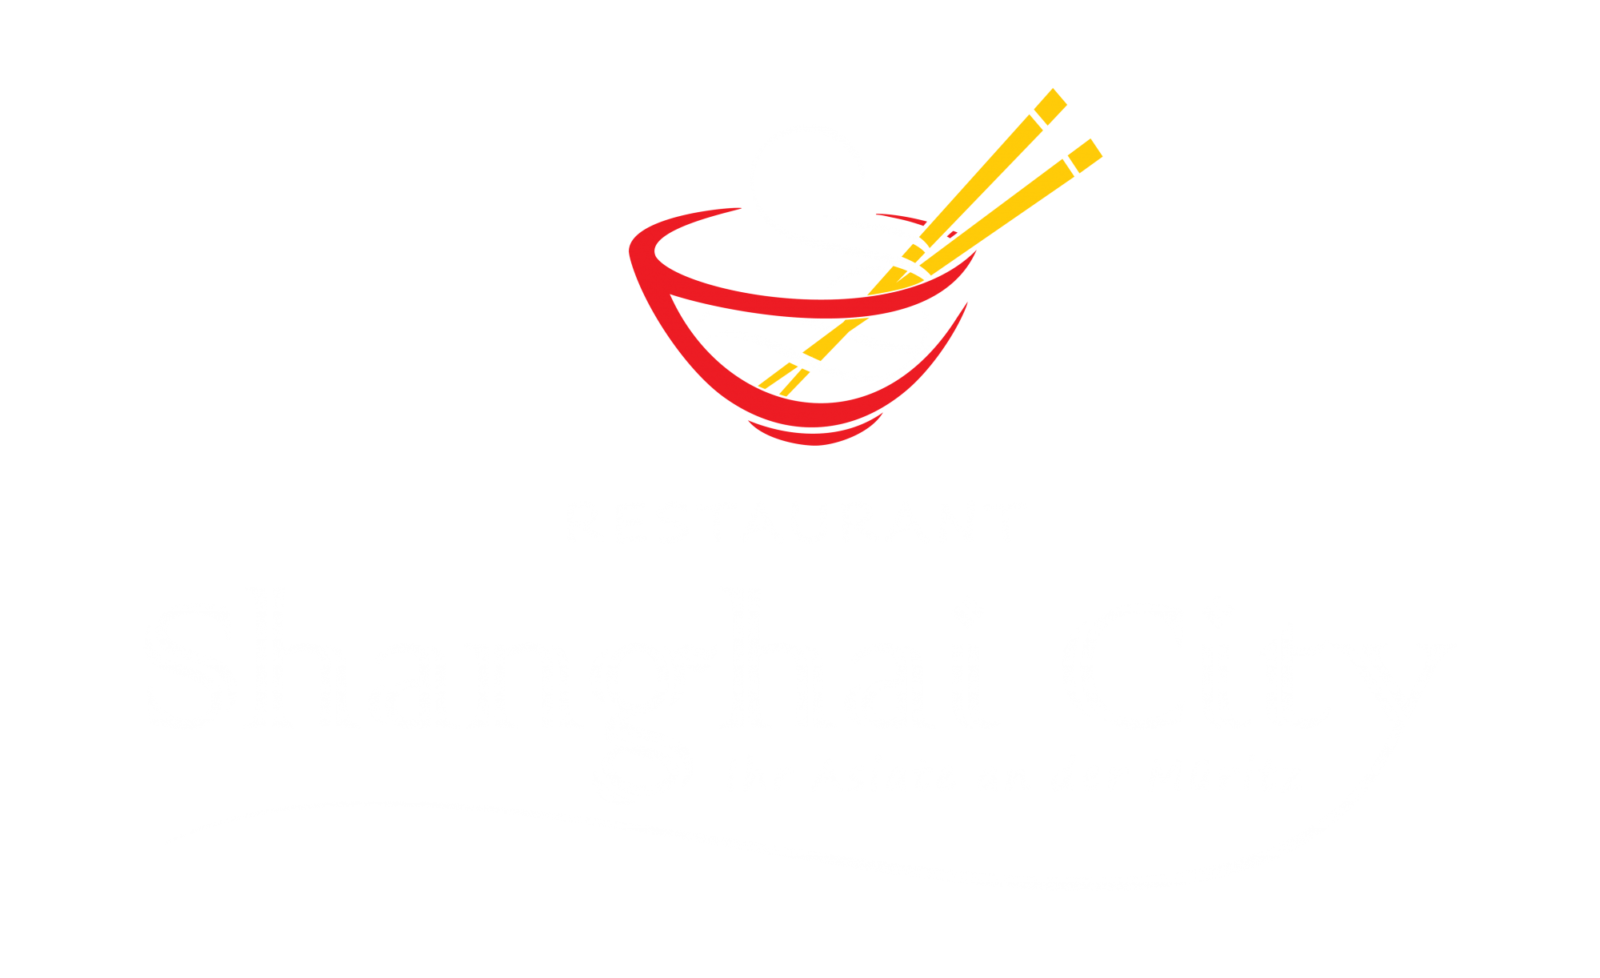 Restaurant Shanghai City